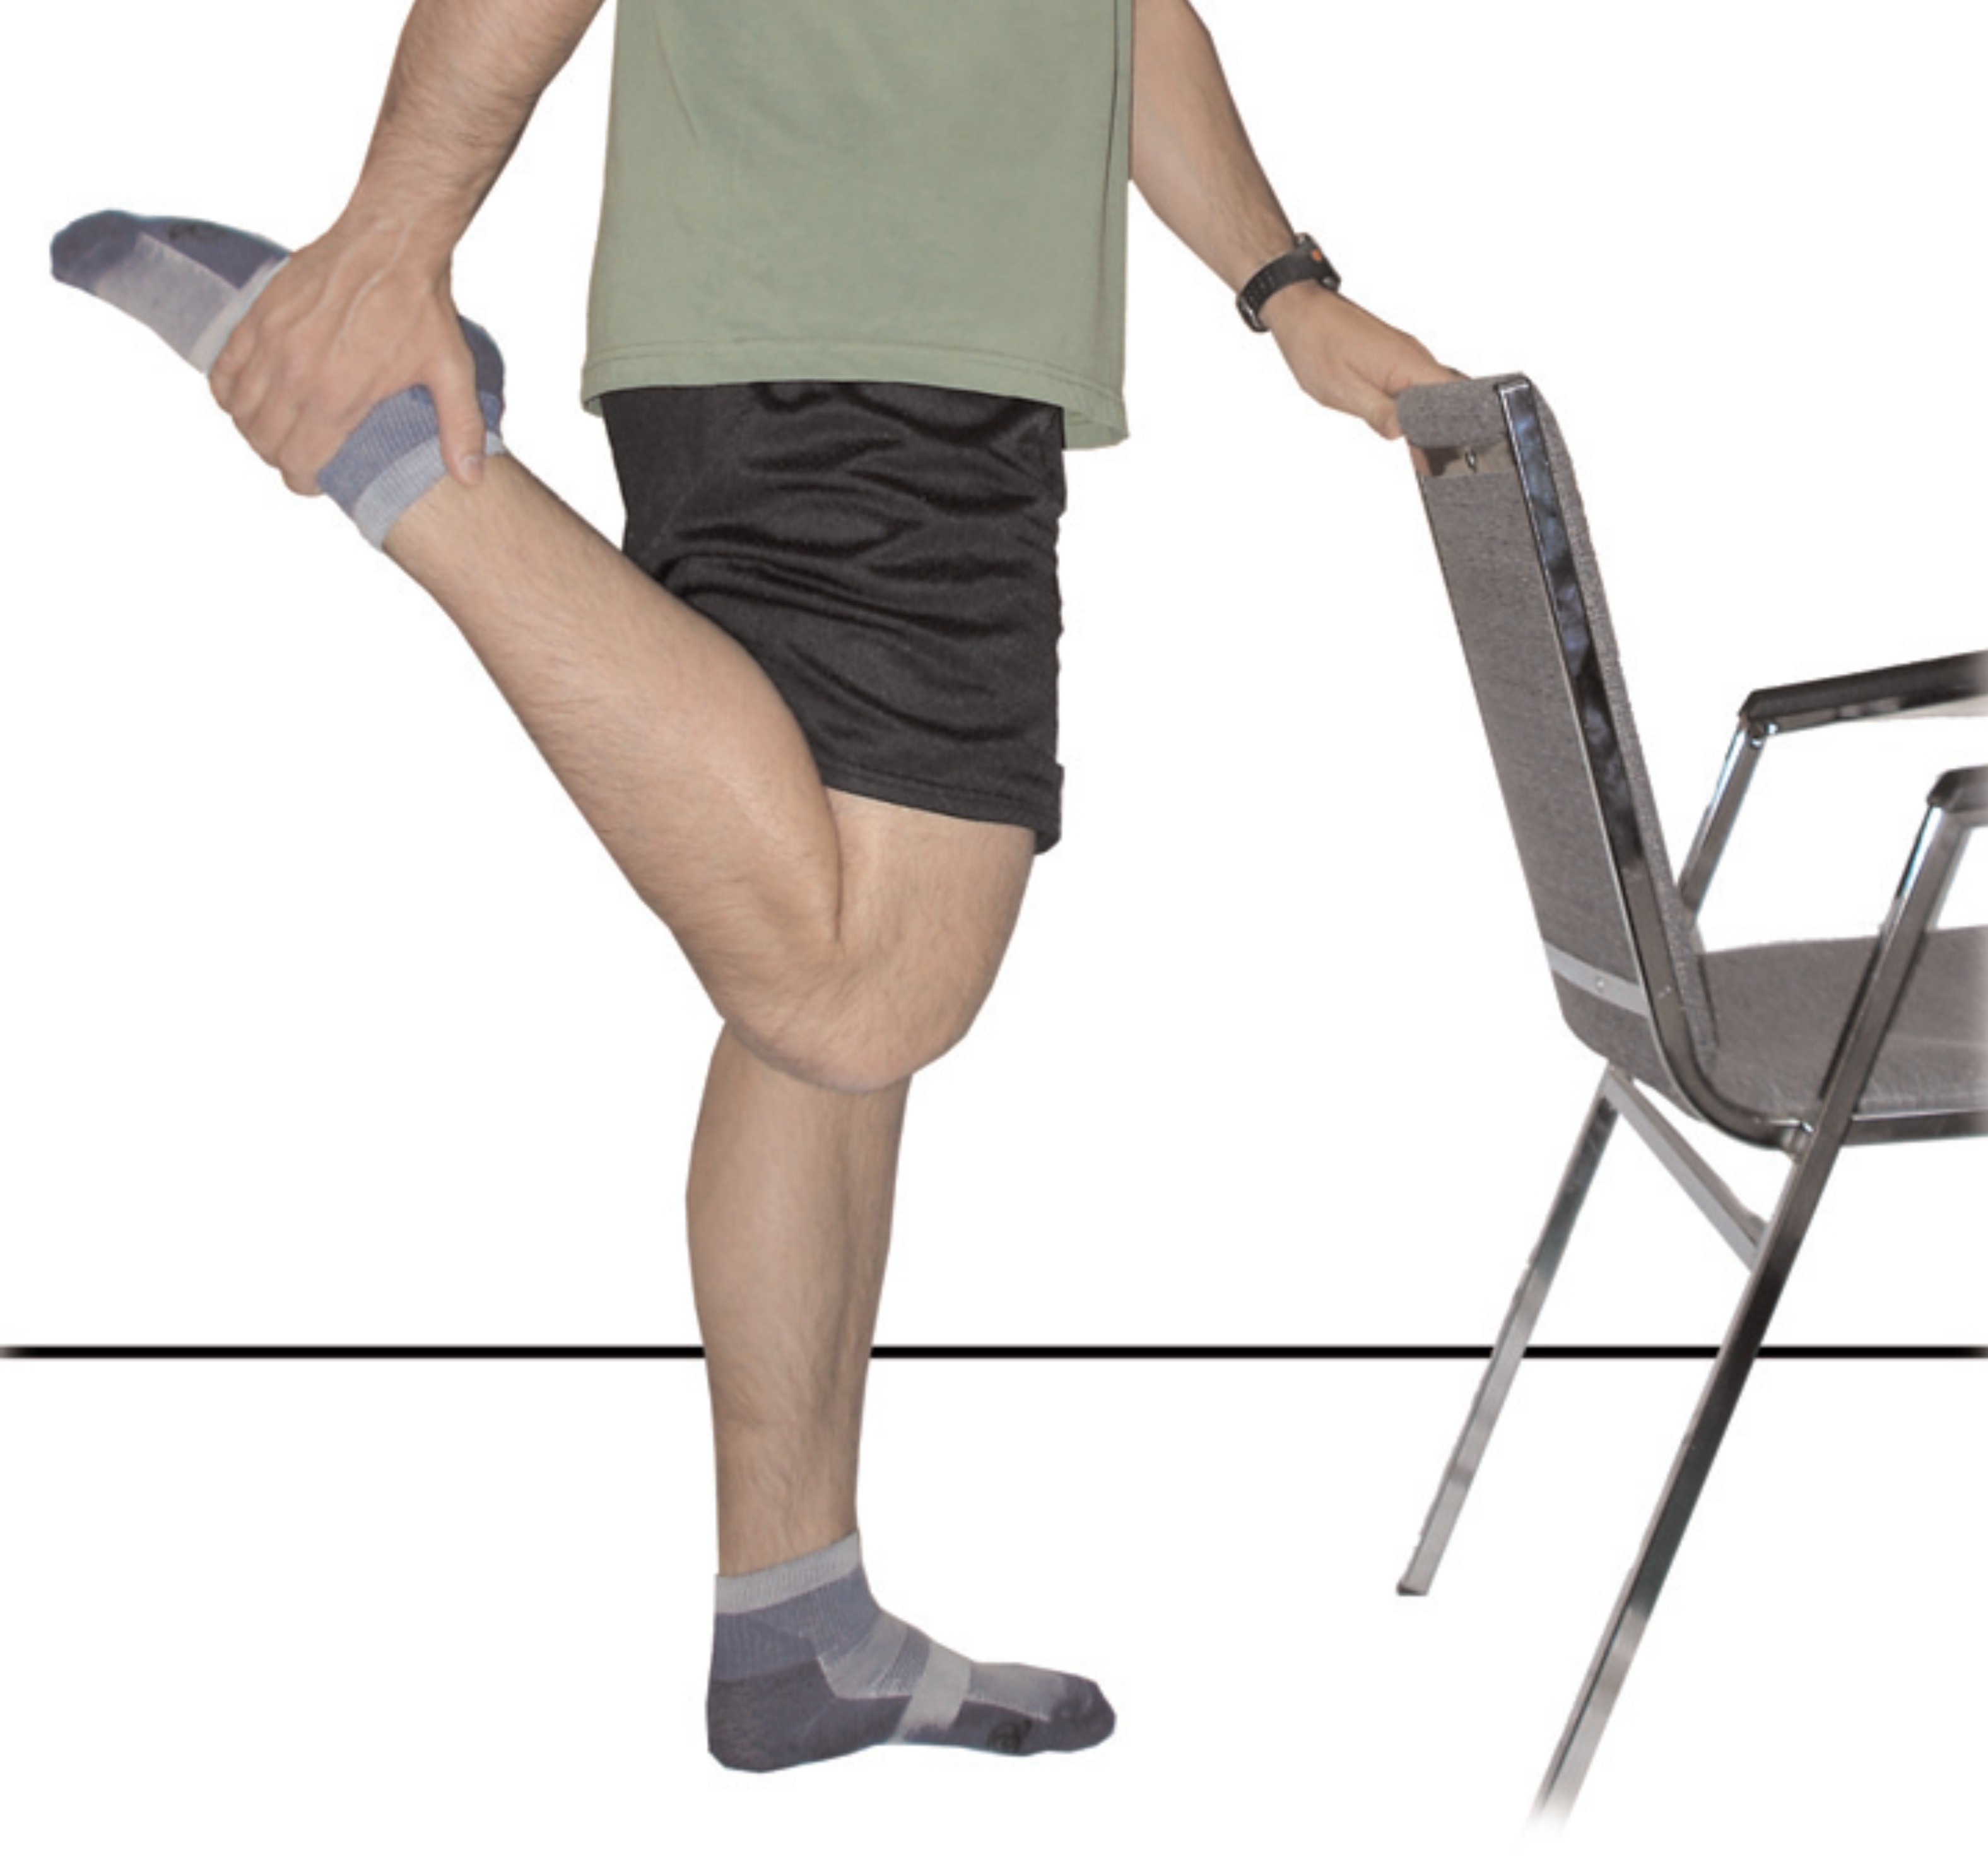 Quadricep Stretches For Seniors